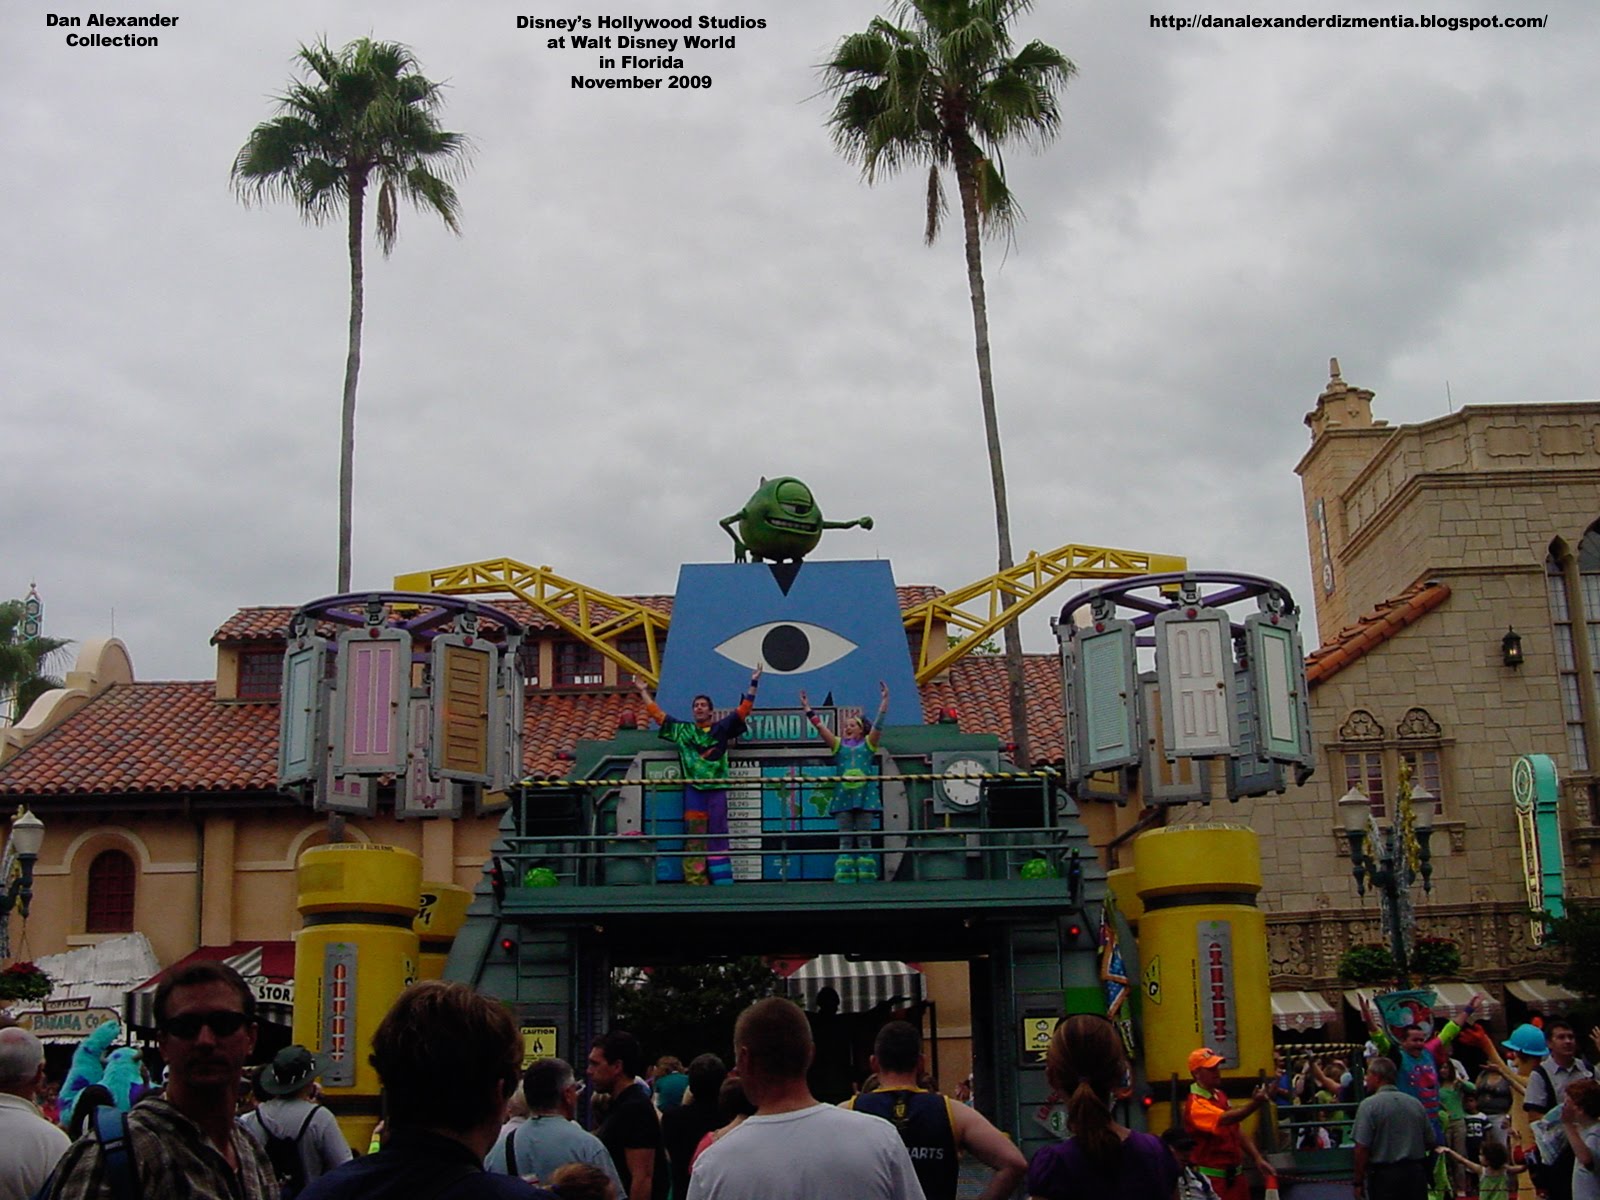 Dan Alexander Dizmentia: Disney's Monsters, Inc. Door Vault Roller